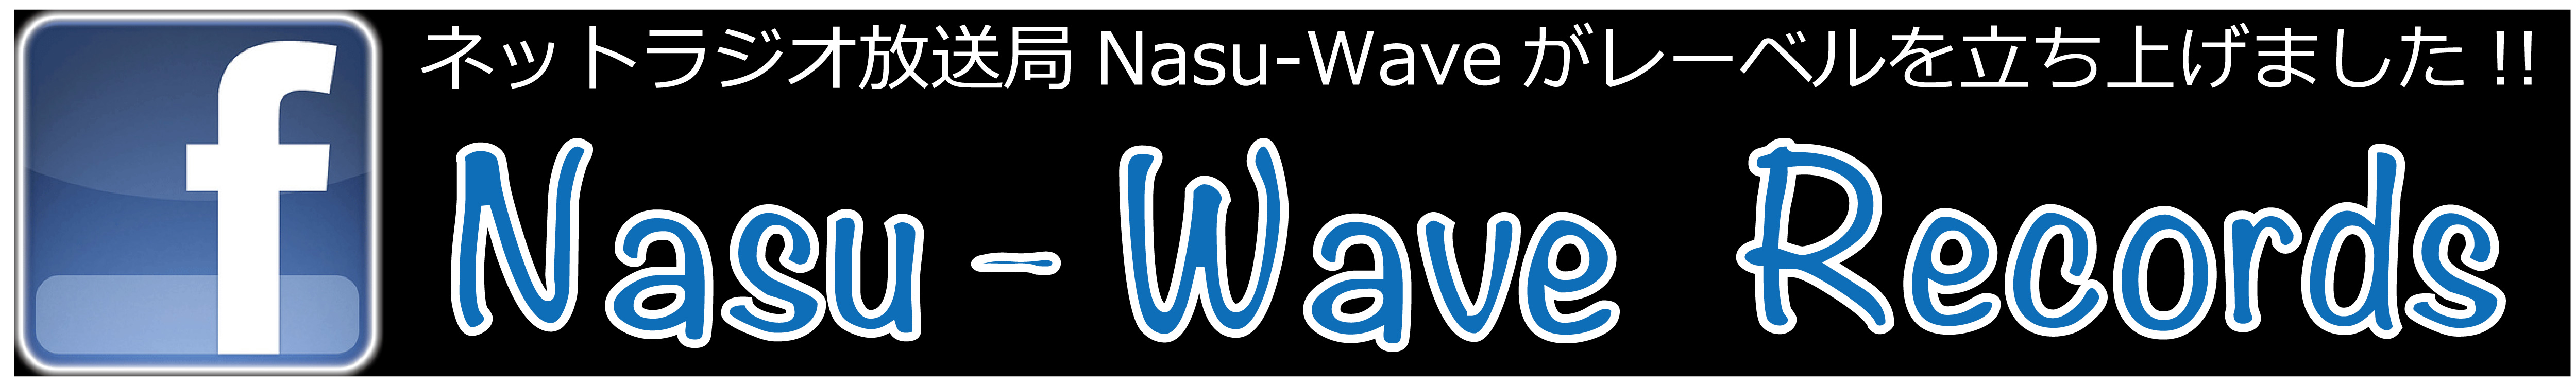 Nasu-Wave Records